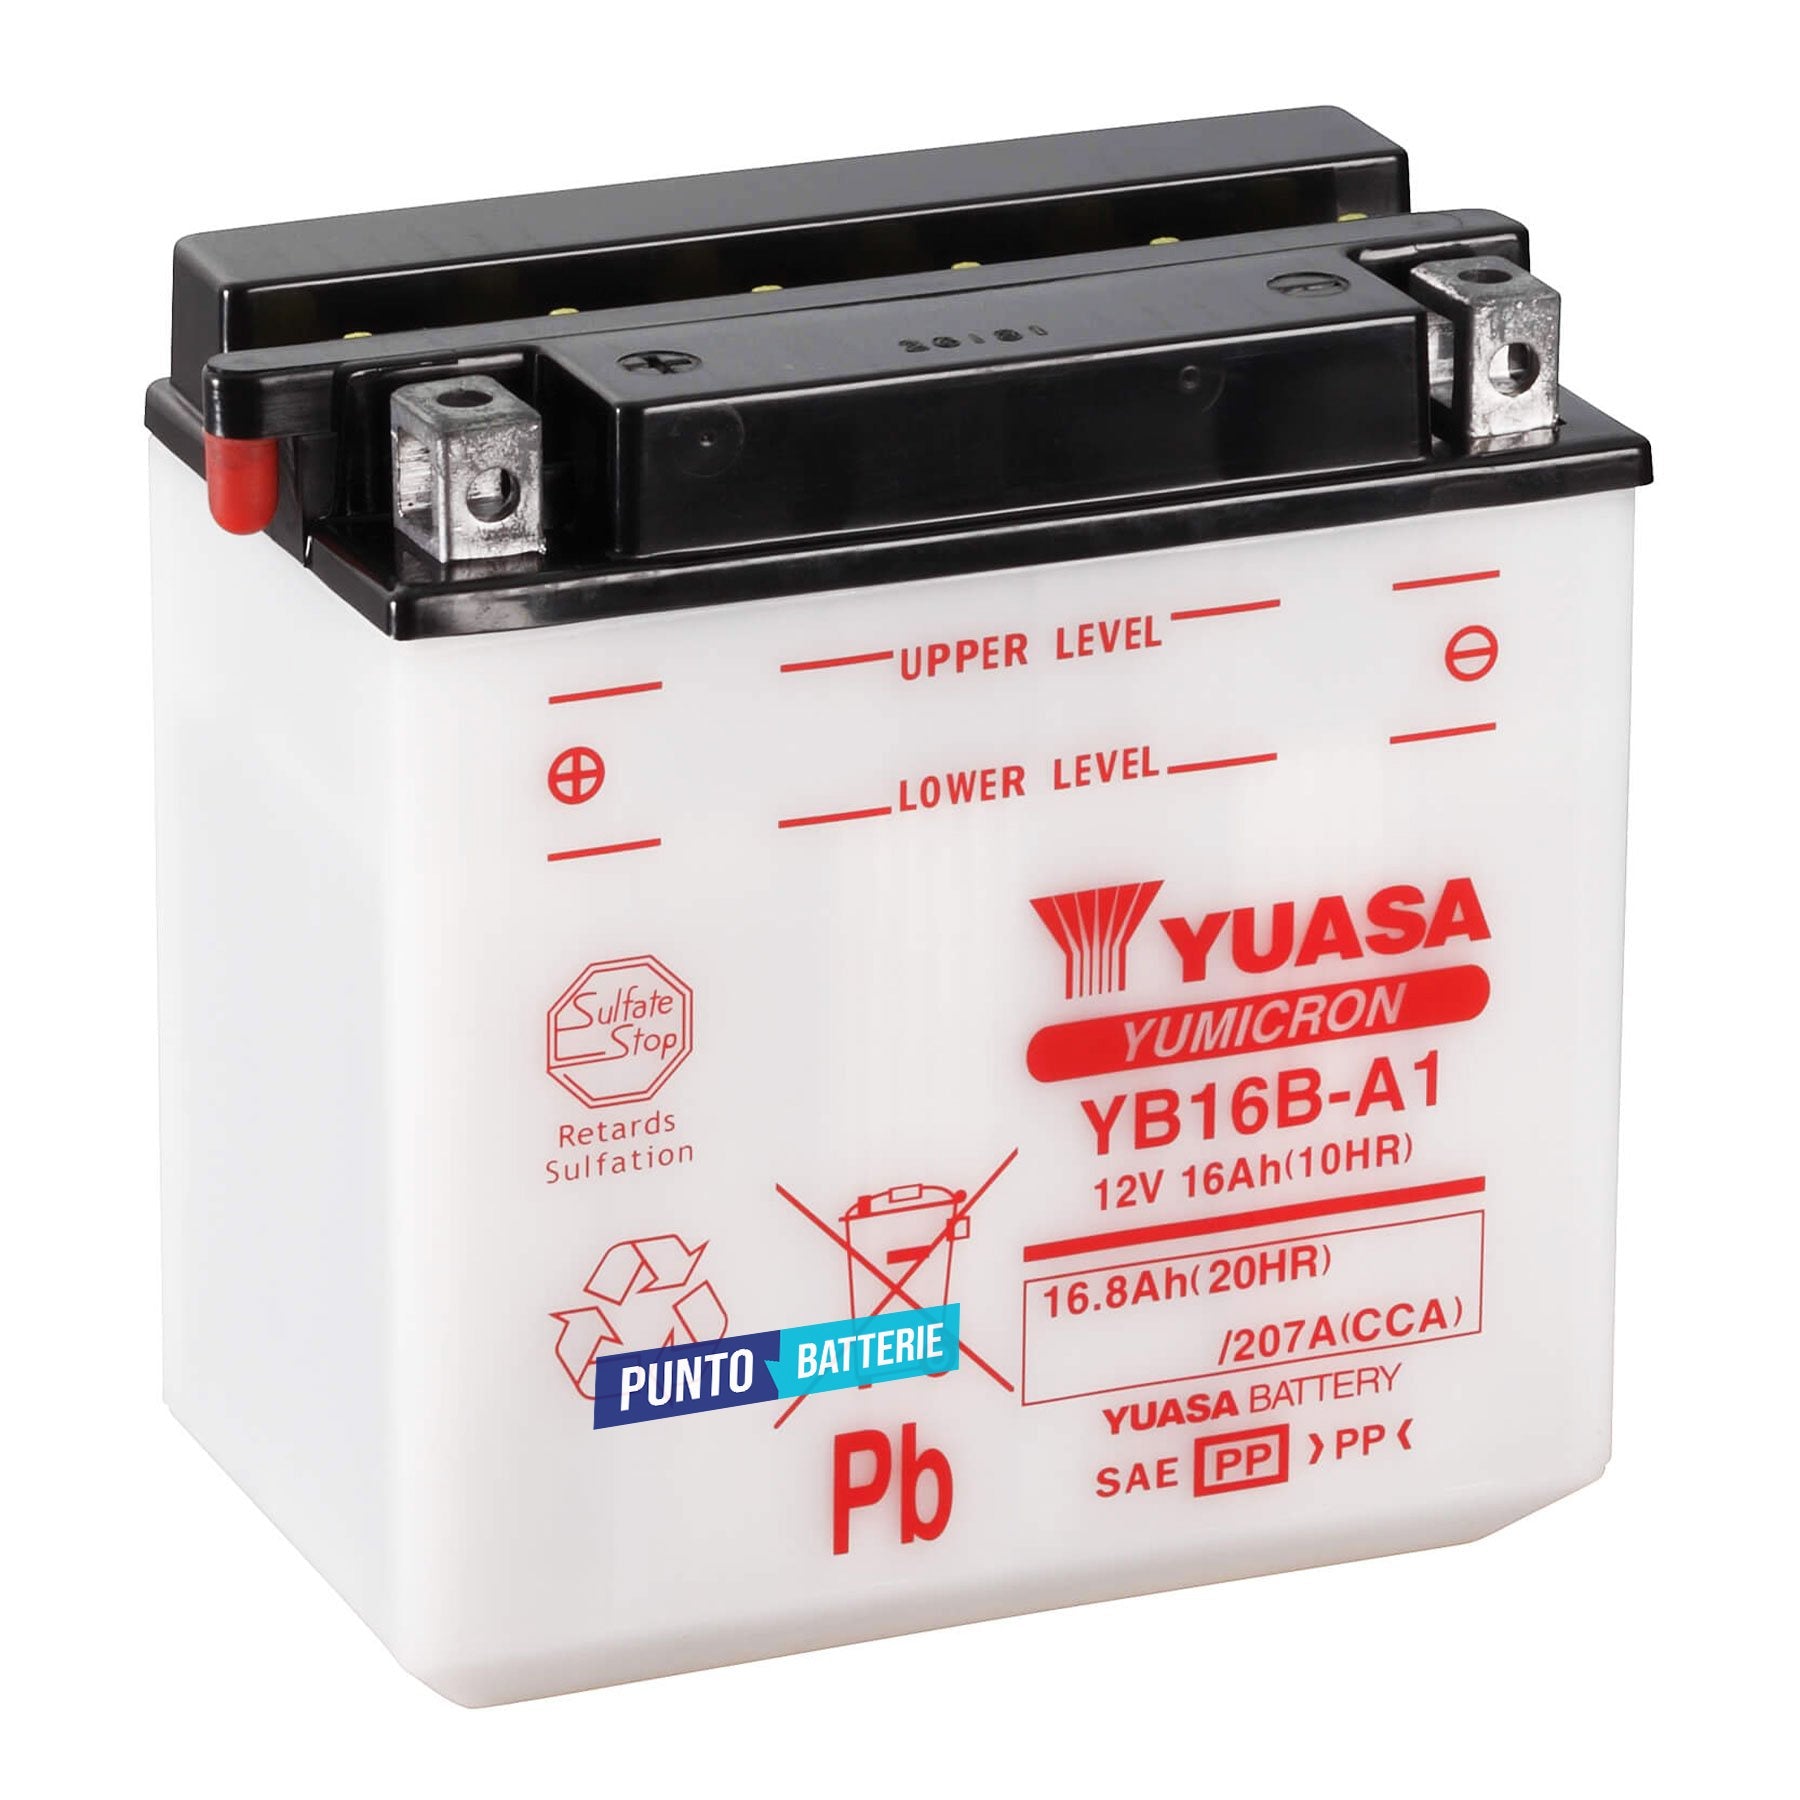 Batteria originale Yuasa YuMicron YB16B-A1, dimensioni 160 x 90 x 161, polo positivo a sinistra, 12 volt, 16 amperora, 207 ampere. Batteria per moto, scooter e powersport.